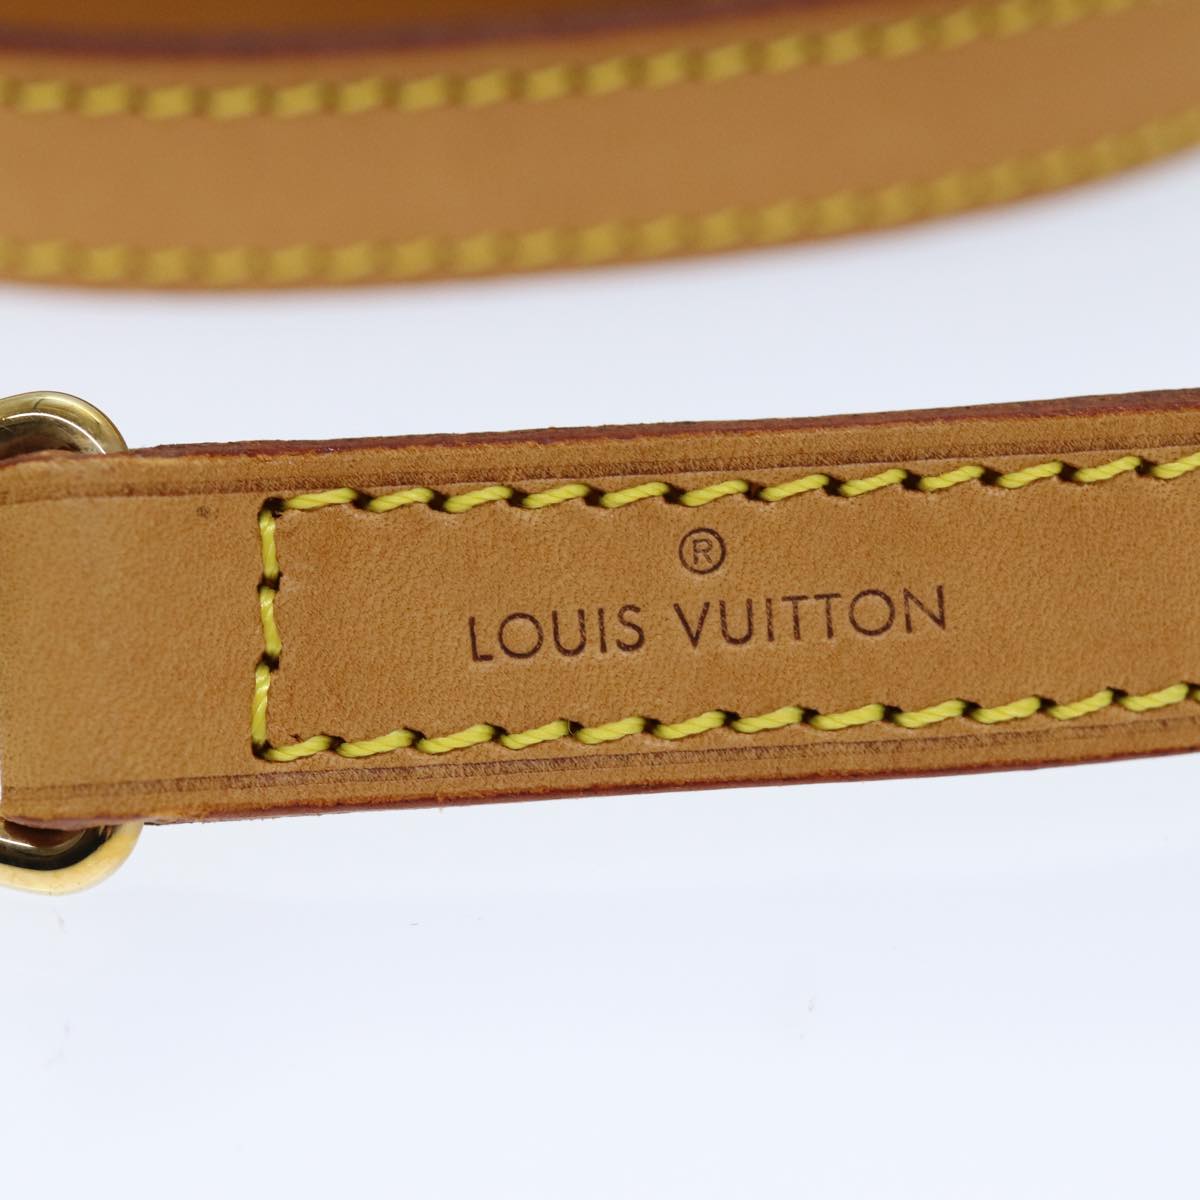 LOUIS VUITTON Shoulder Strap Leather 35.8"" Beige LV Auth 72438